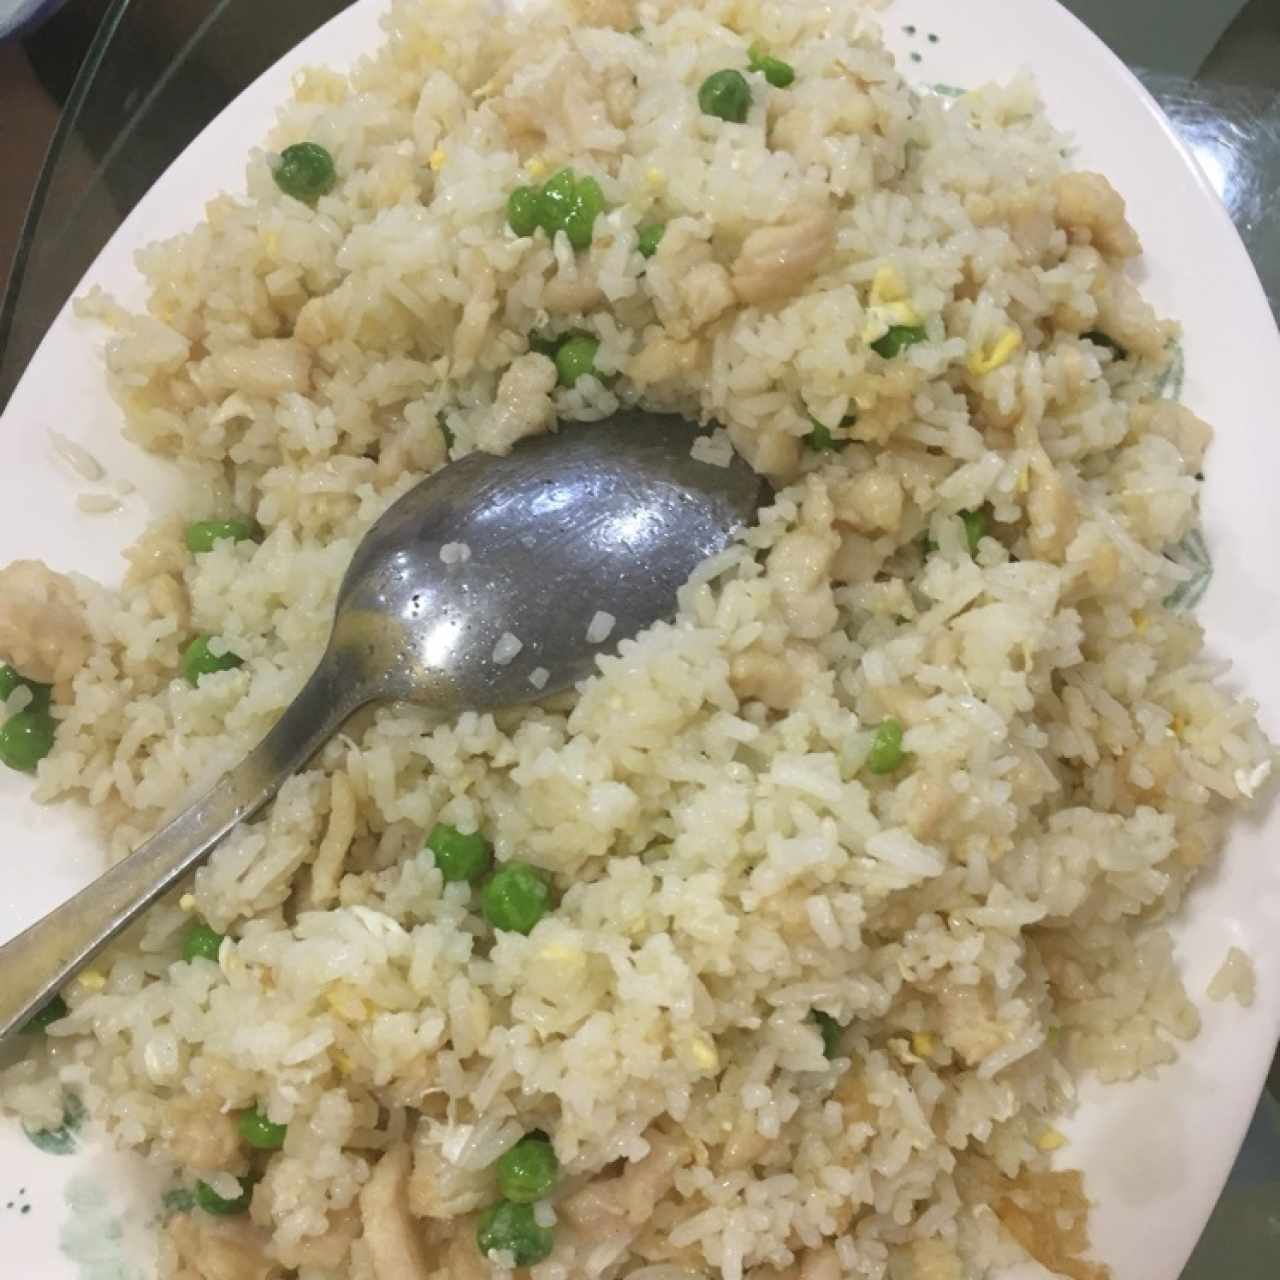 arroz frito al pollo